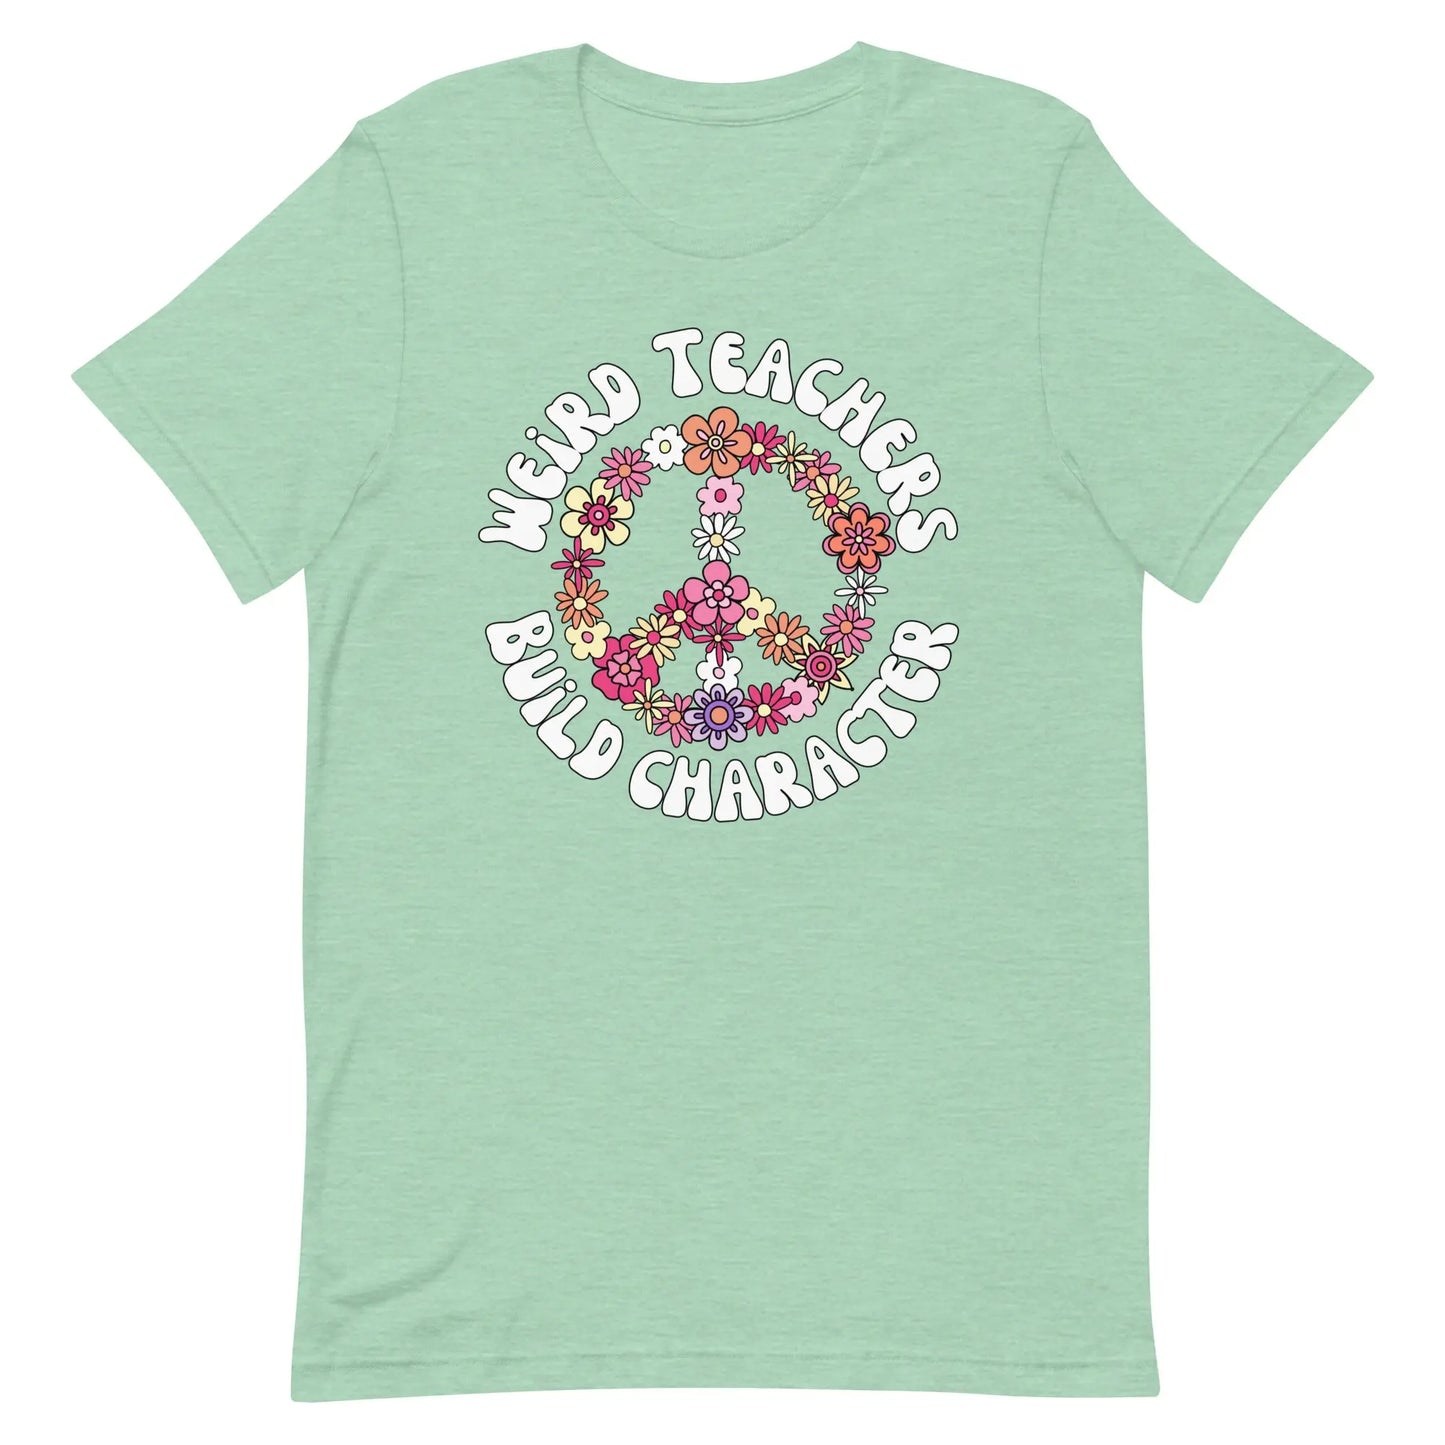 Weird Teachers Build Character t-shirt | Retro Teacher's Shirt Amazing Faith Designs